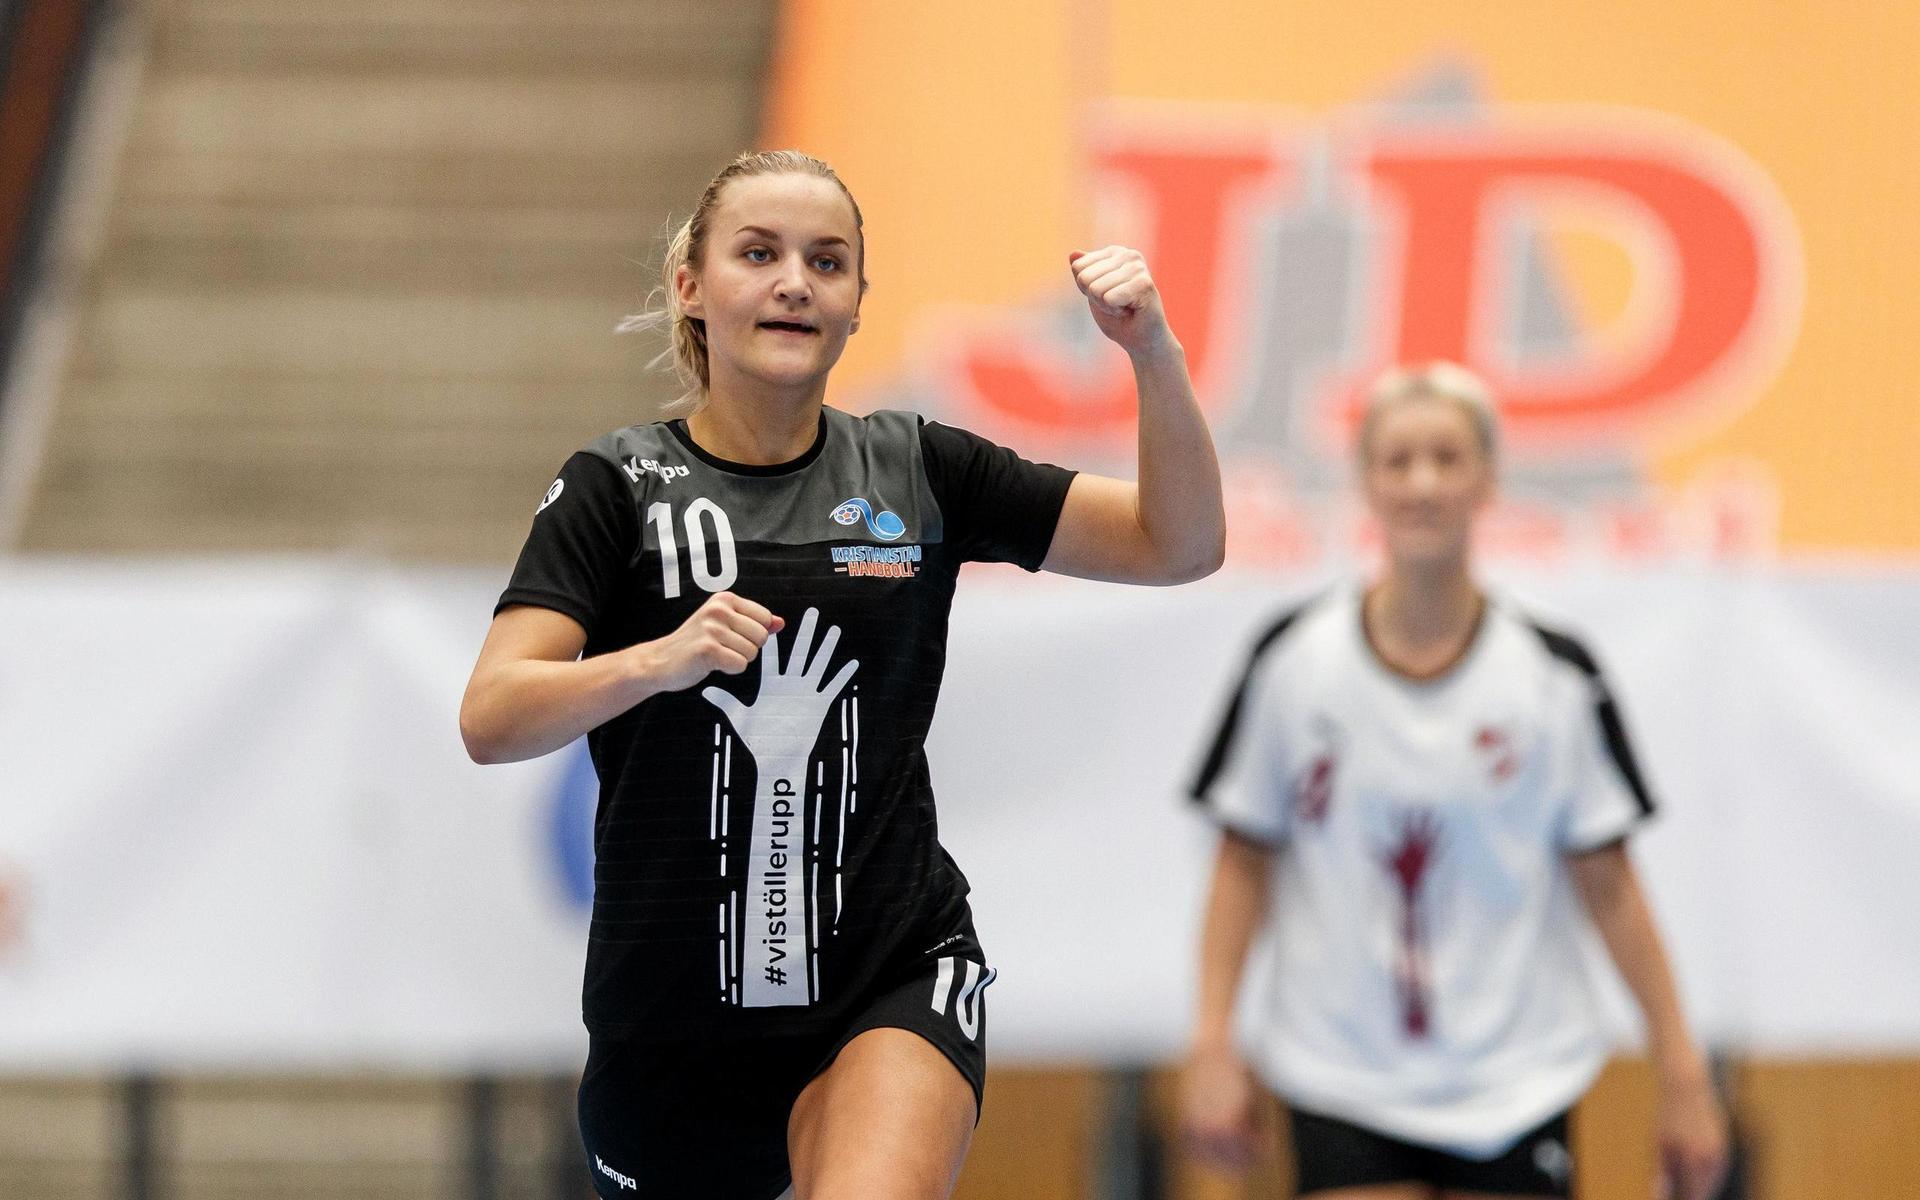 Amanda Kullenberg jublar under en match med Kristianstad. Bild: Mathilda Ahlberg/Bildbyrån/arkiv